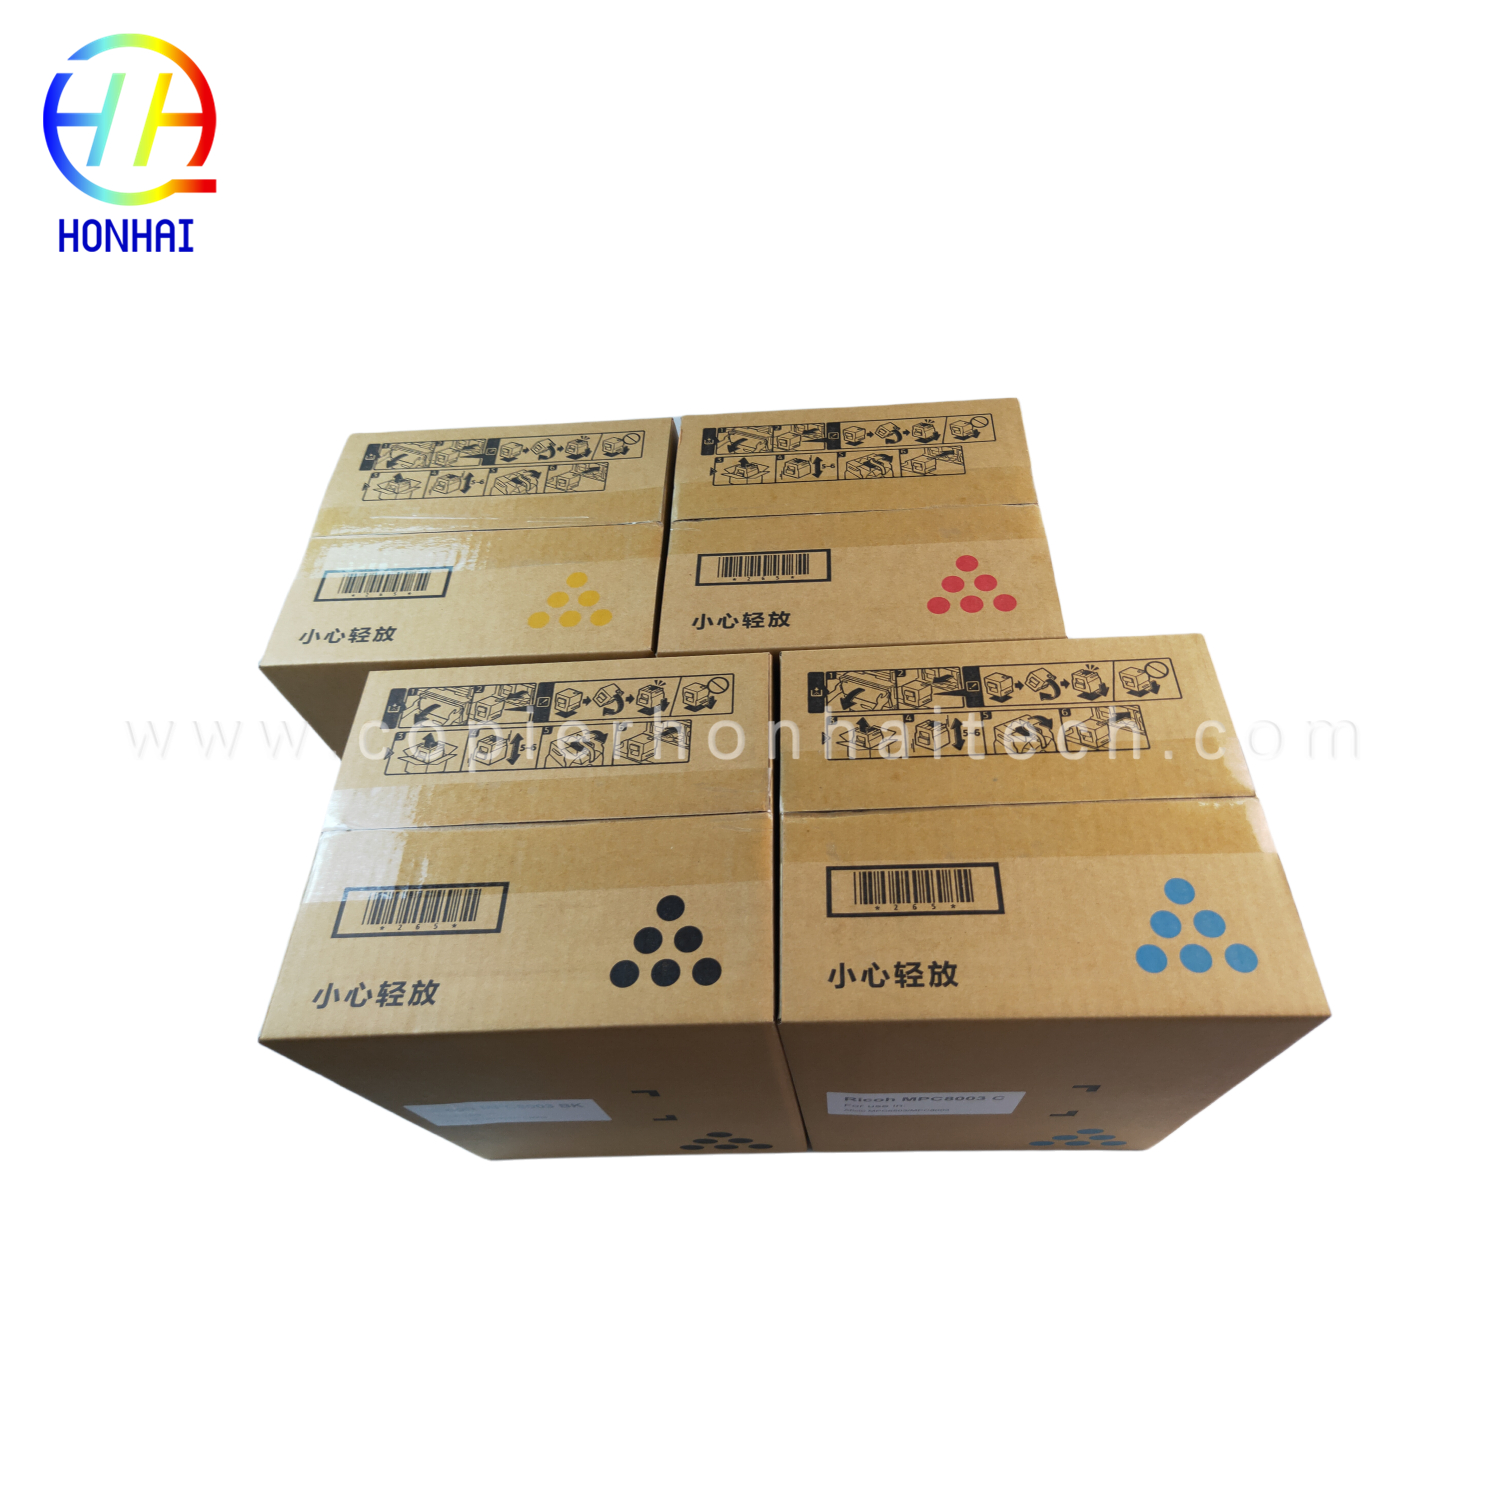 https://www.copierhonhaitech.com/toner-cartridge-japan-powder-for-ricoh-ref-842346-mp9002-mp6002-mp6002sp-mp6503-mp7502-mp7502sp-mp7503-mp9002sp-mp-product/9003